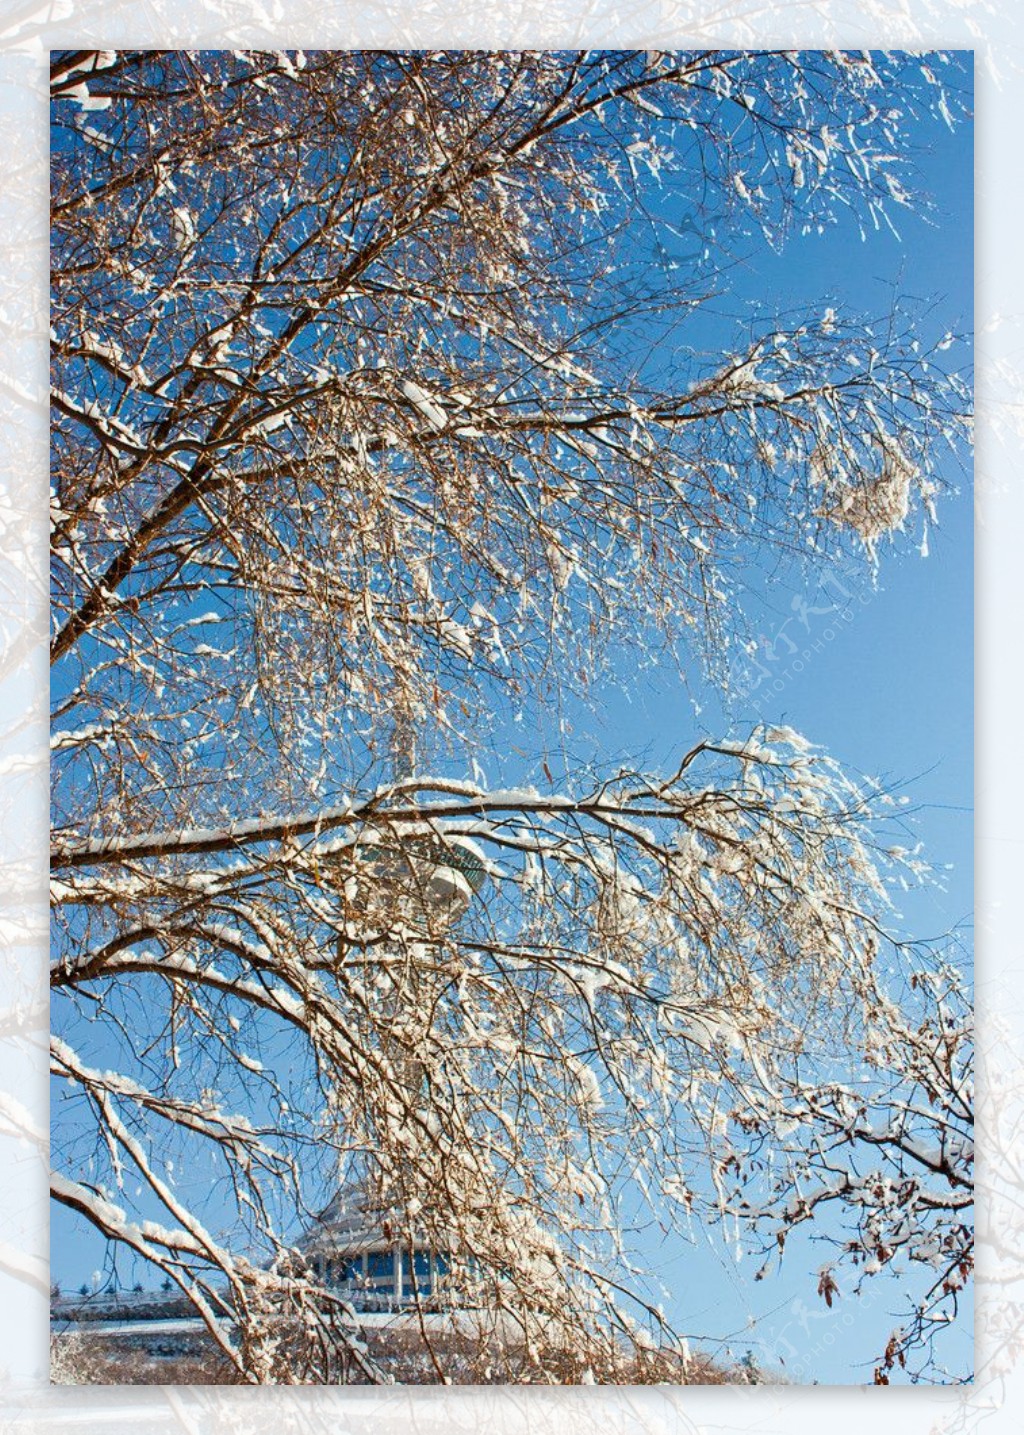 大树黄叶雪挂电视塔图片